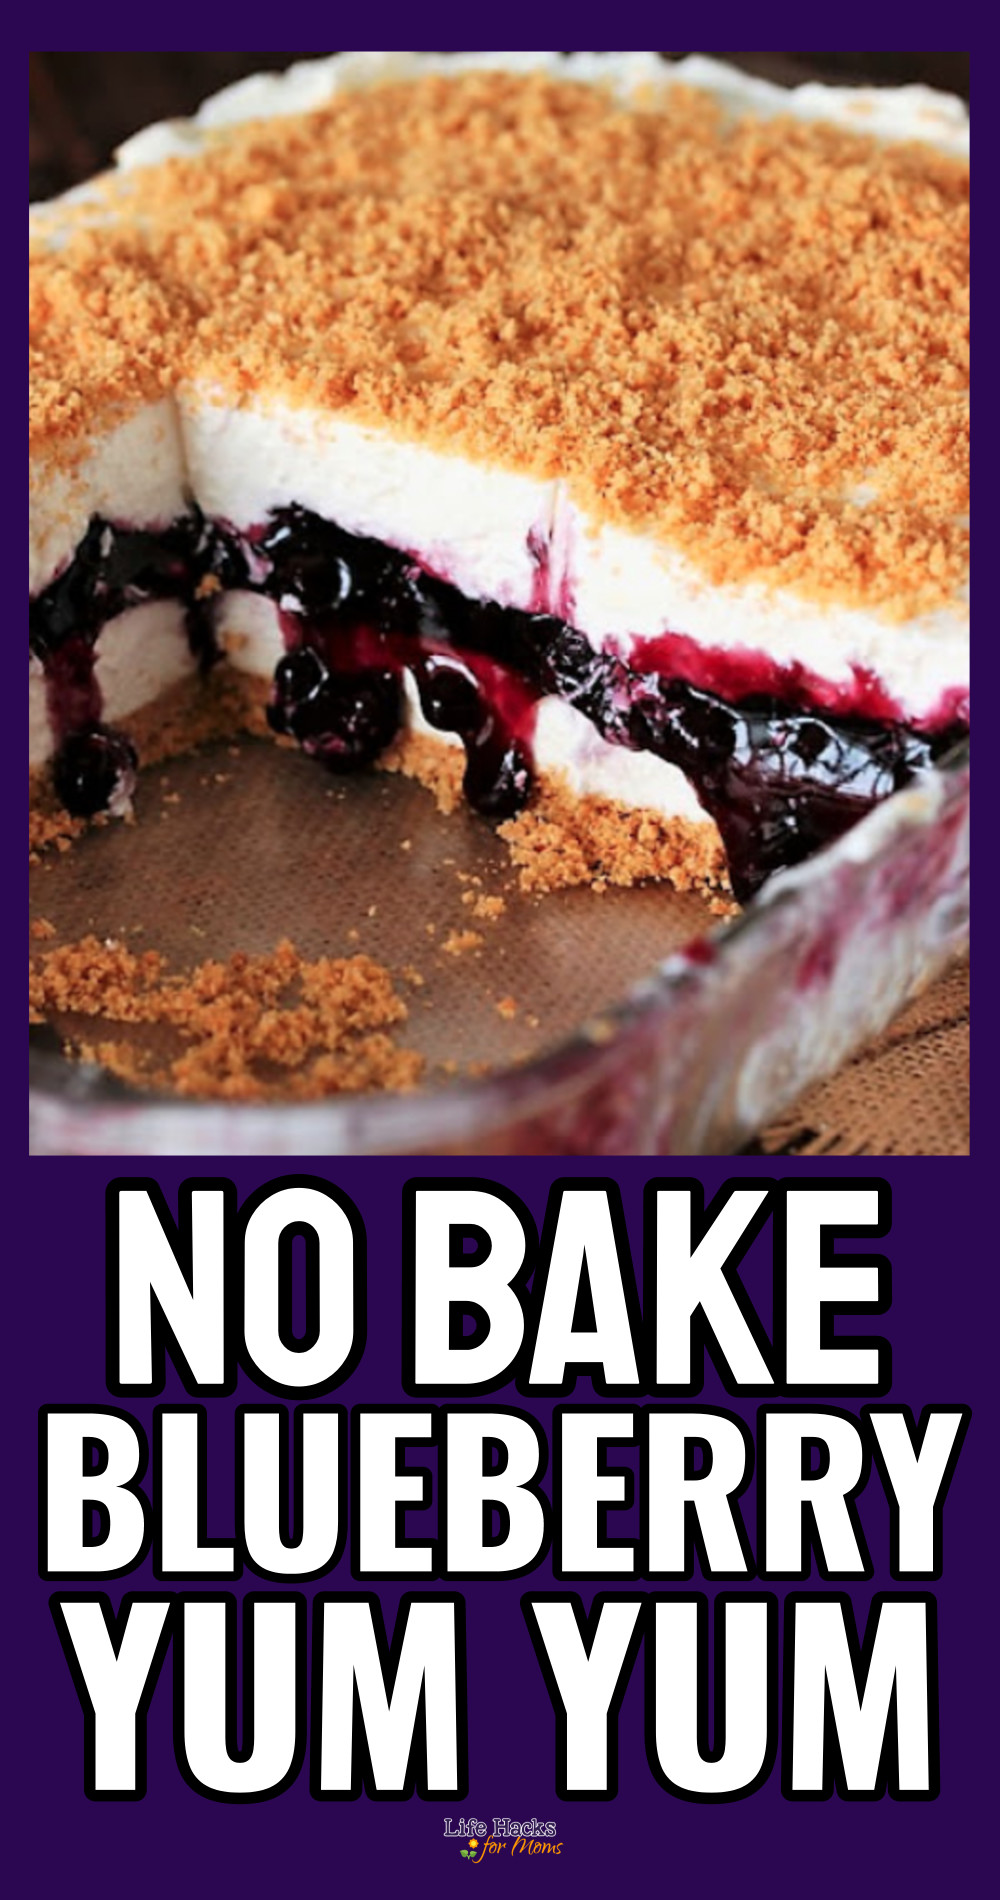 no bake blueberry yum yum dessert recipe